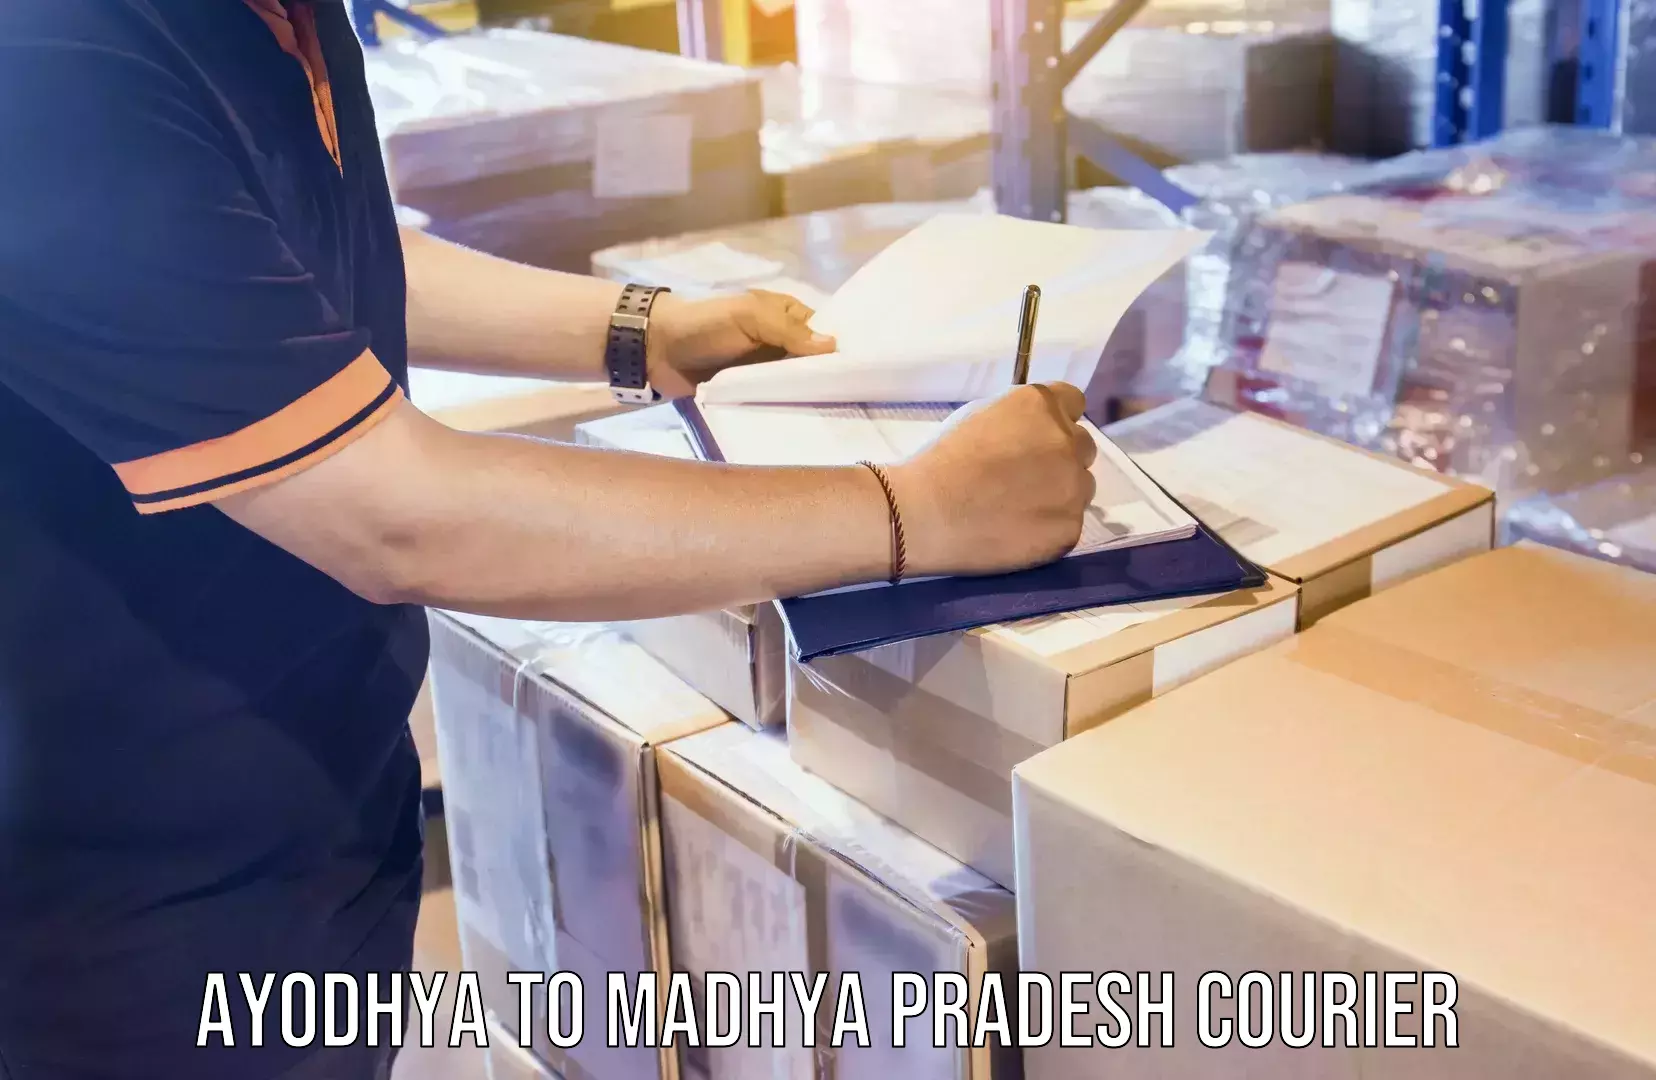 Premium courier services Ayodhya to Madhya Pradesh